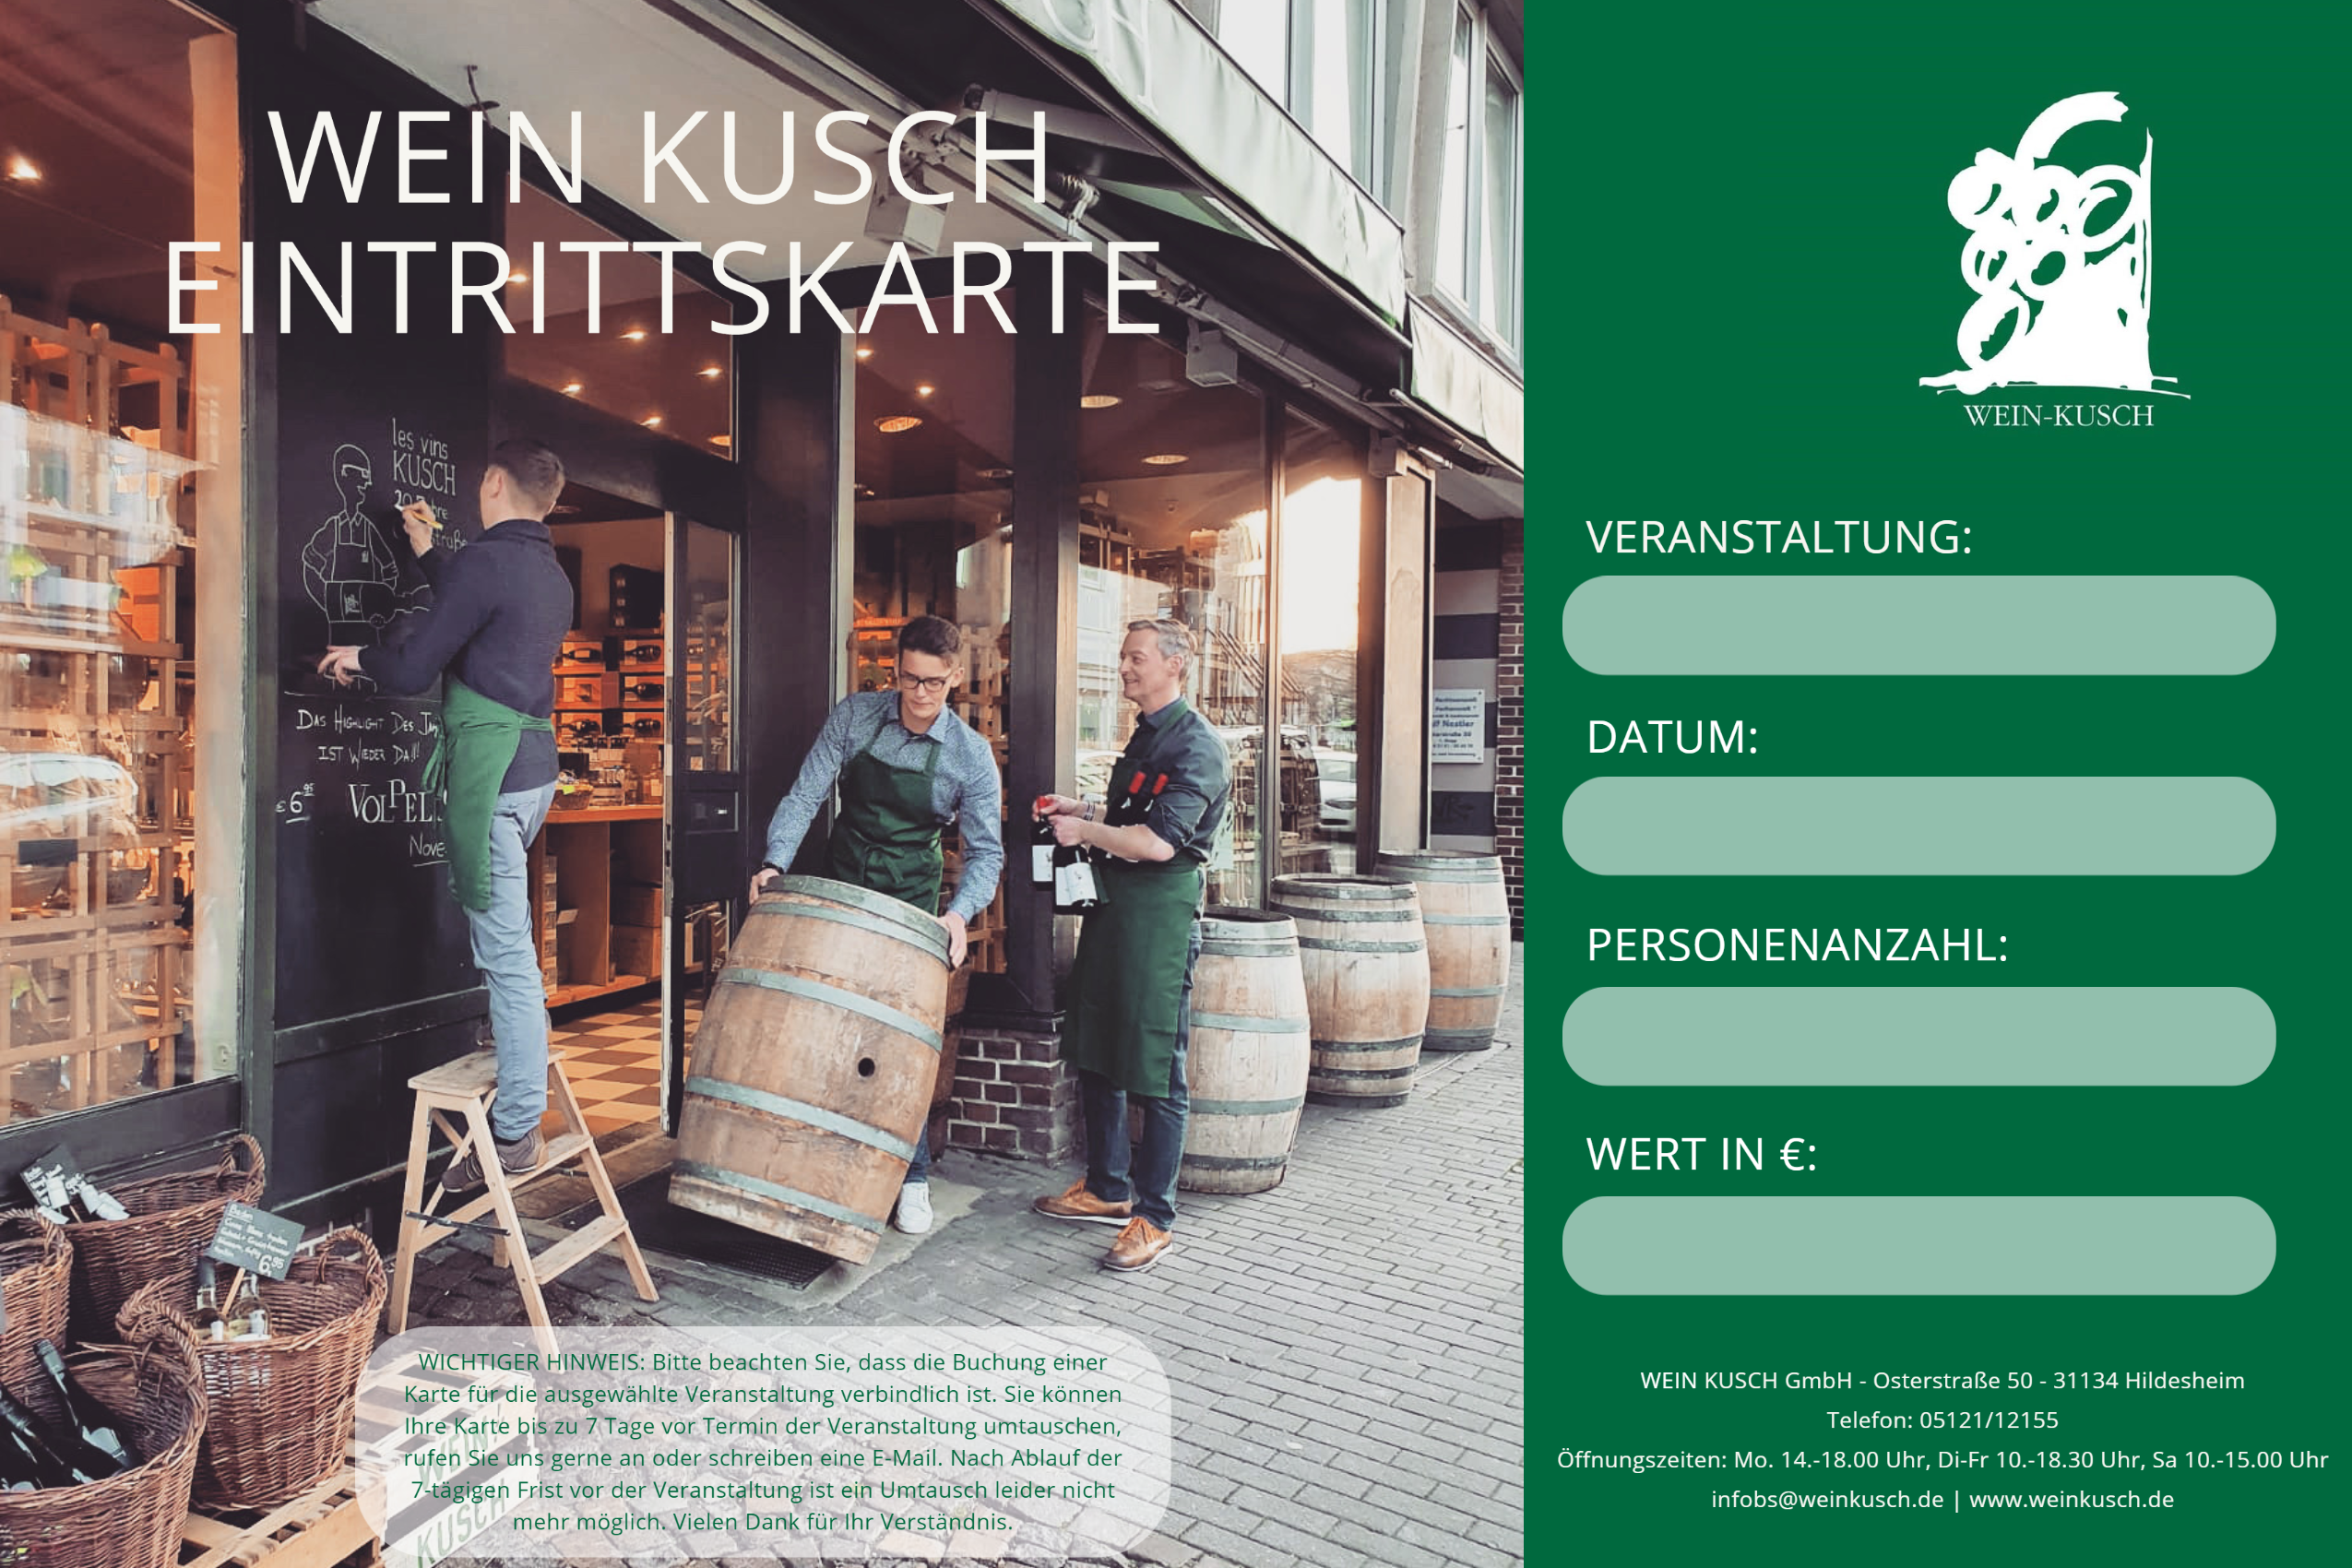 2023.09.01 - Whisky Tasting "Europa Reise" in Hildesheim 19.00 Uhr